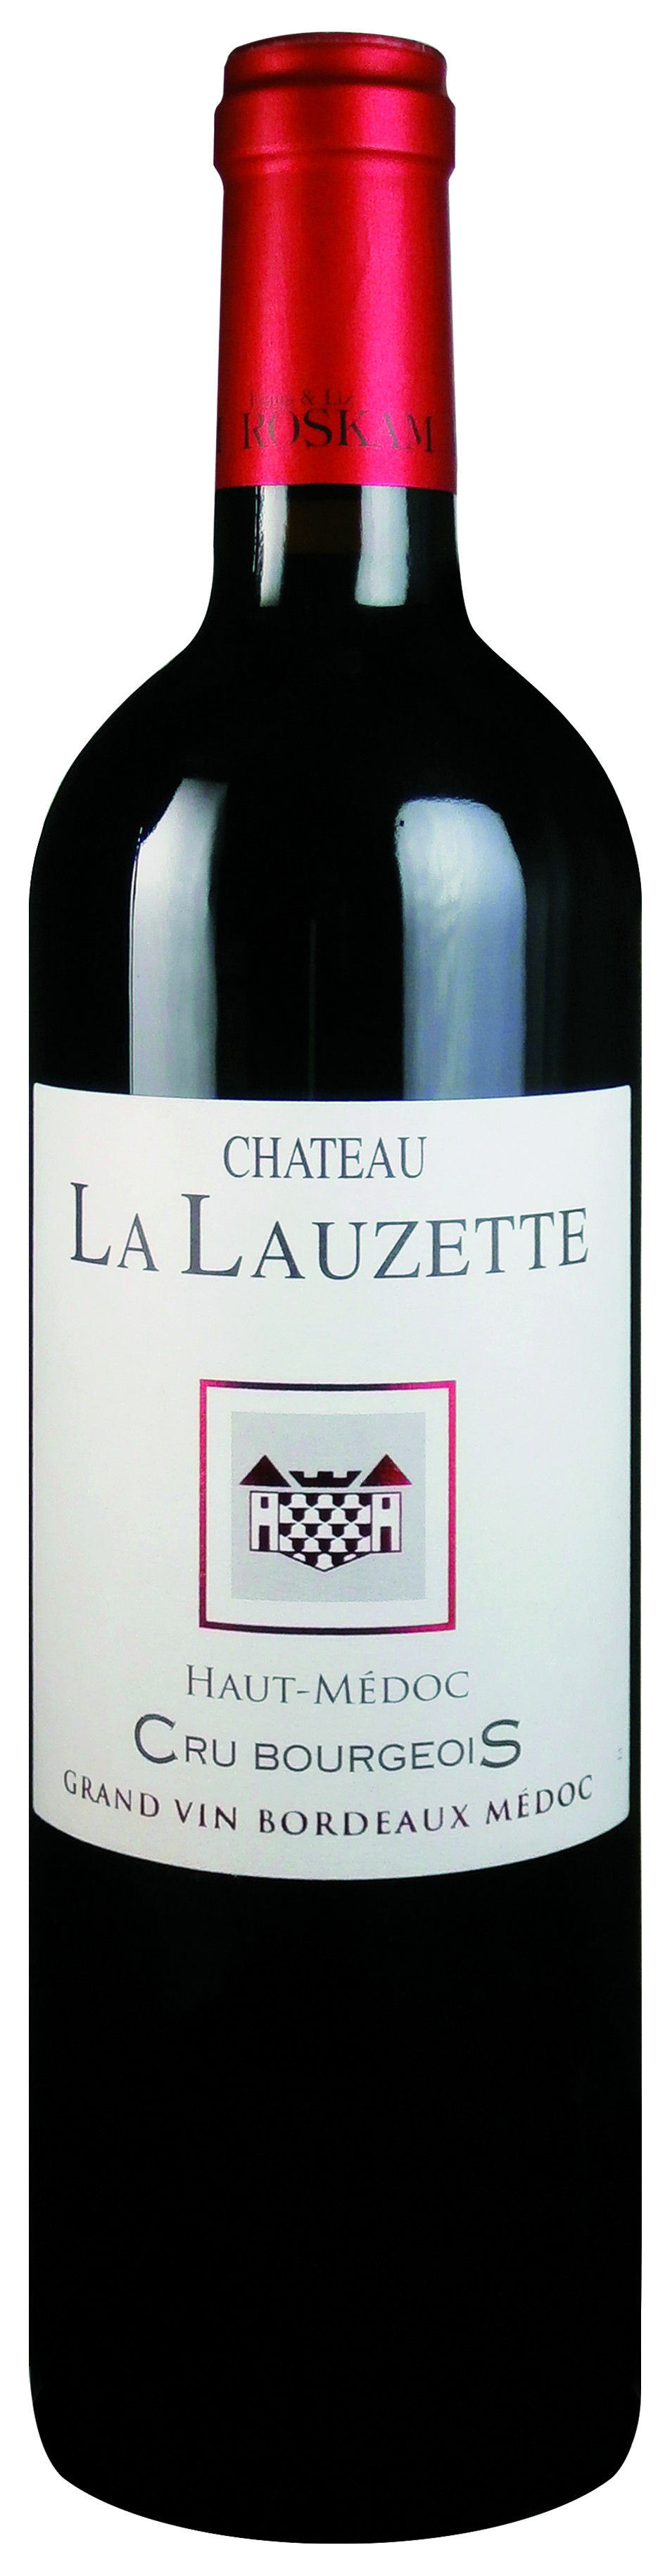 Ch. la lauzette 03 75cl listrac-medoc cru bourgeois